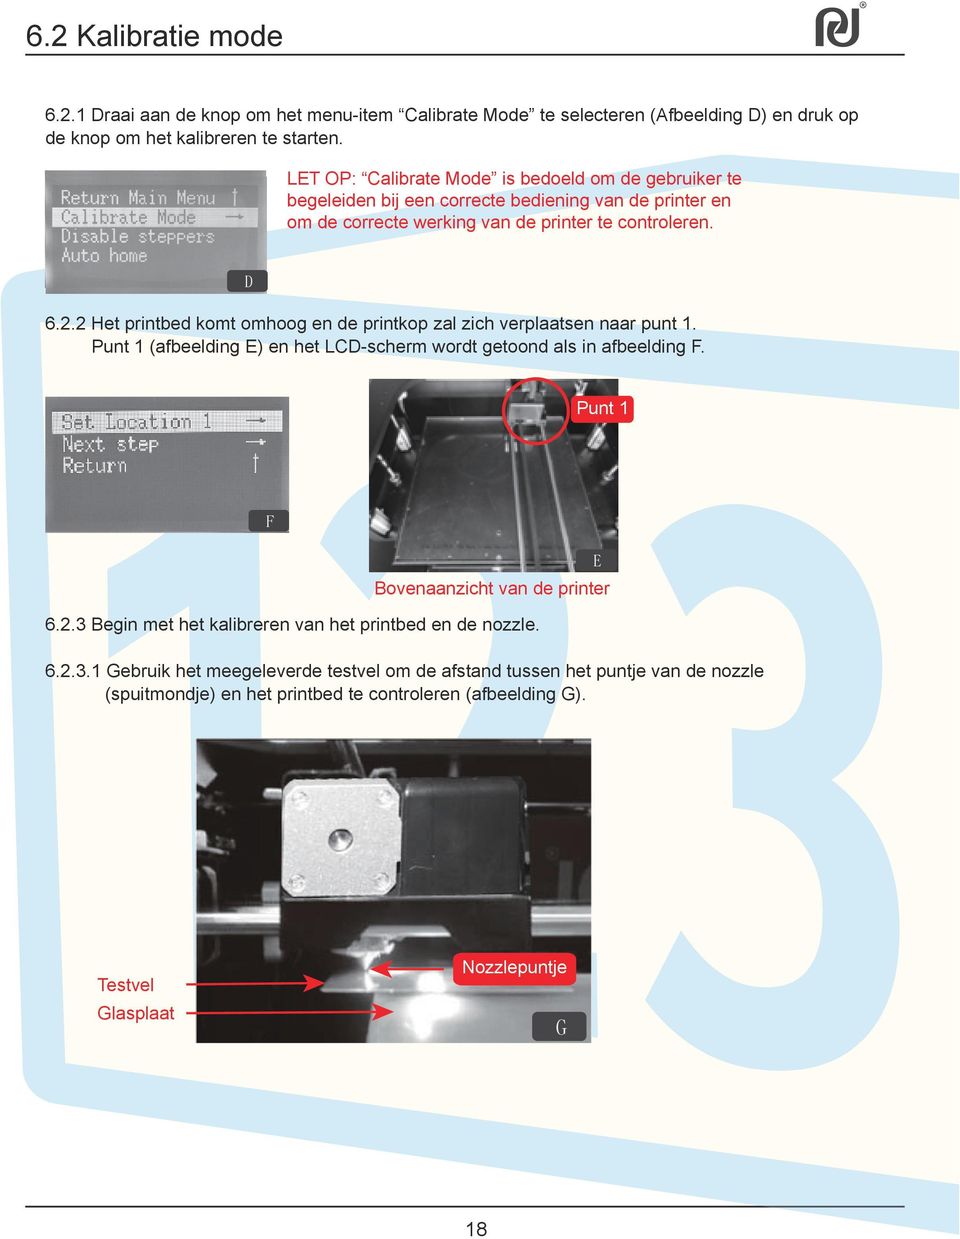 2 Het printbed komt omhoog en de printkop zal zich verplaatsen naar punt 1. Punt 1 (afbeelding E) en het LCD-scherm wordt getoond als in afbeelding F.